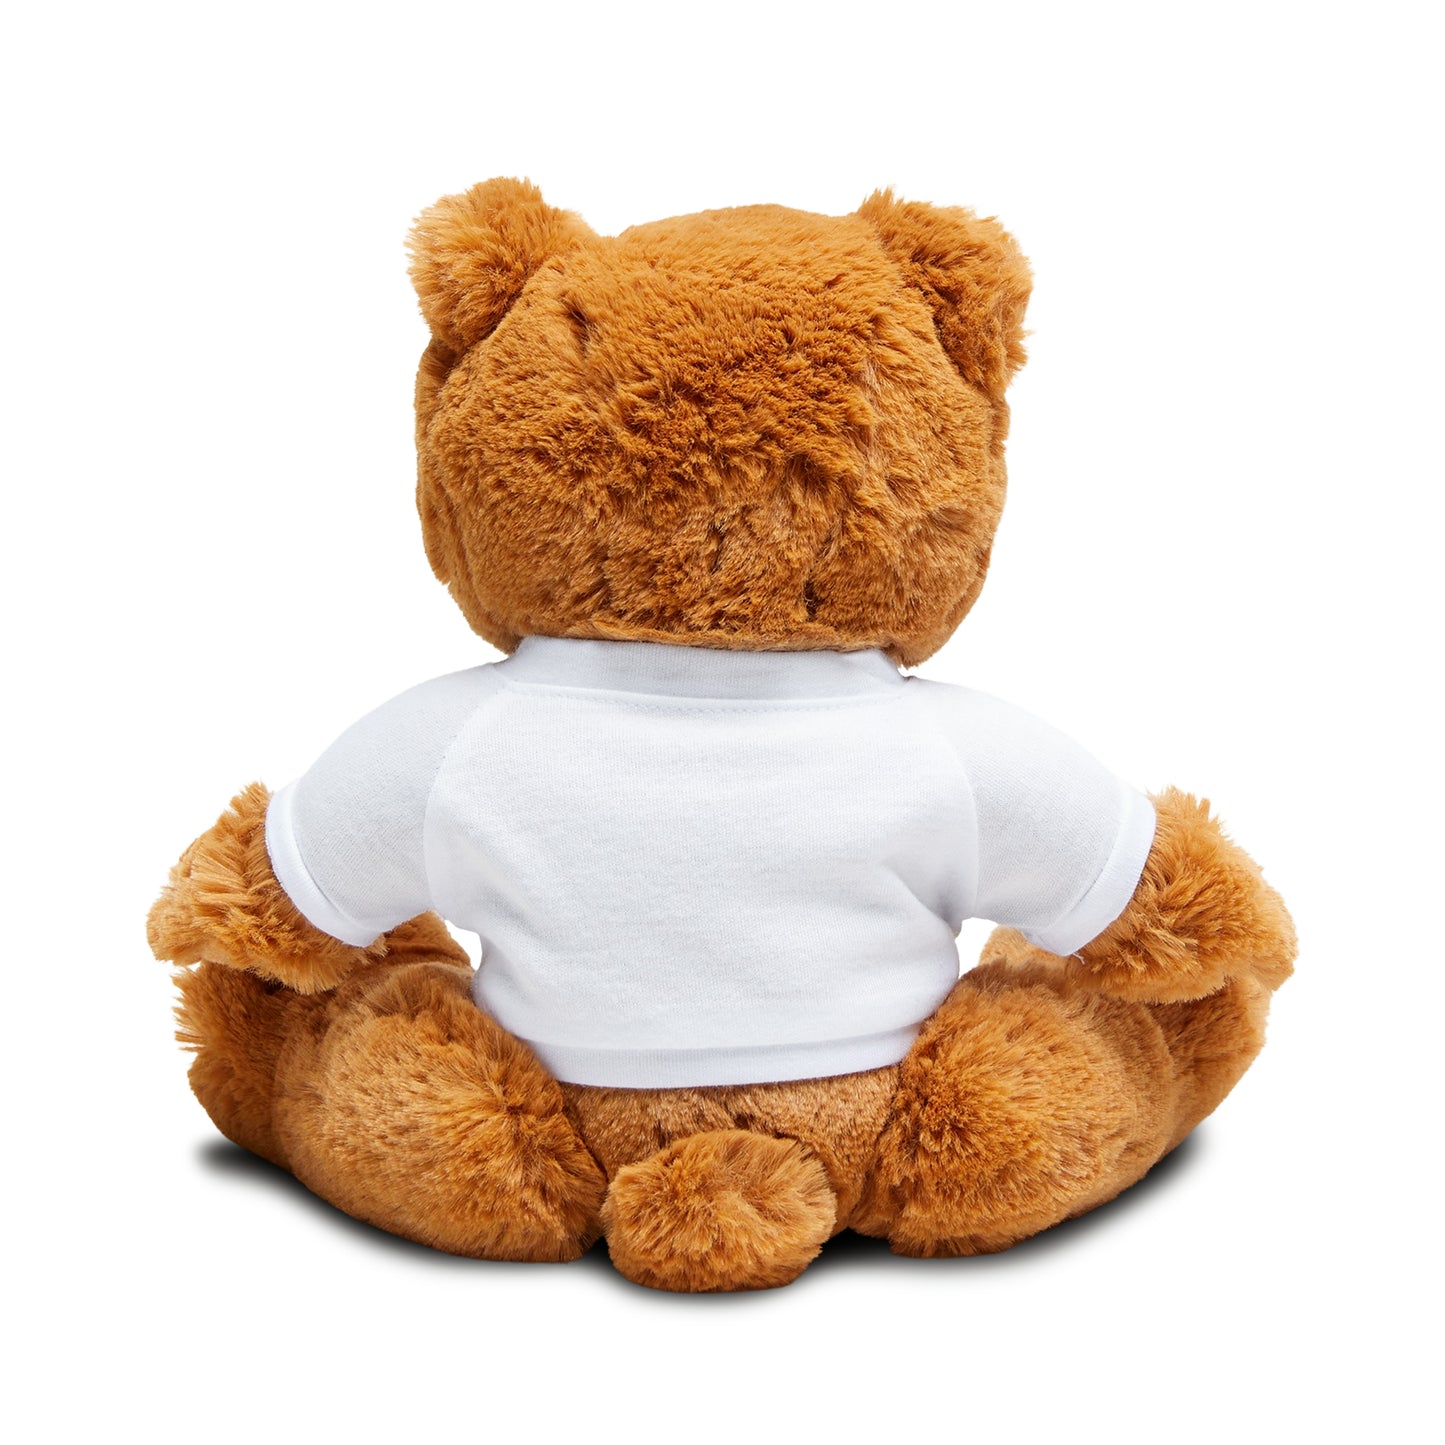 Our Little Life - Teddy Bear